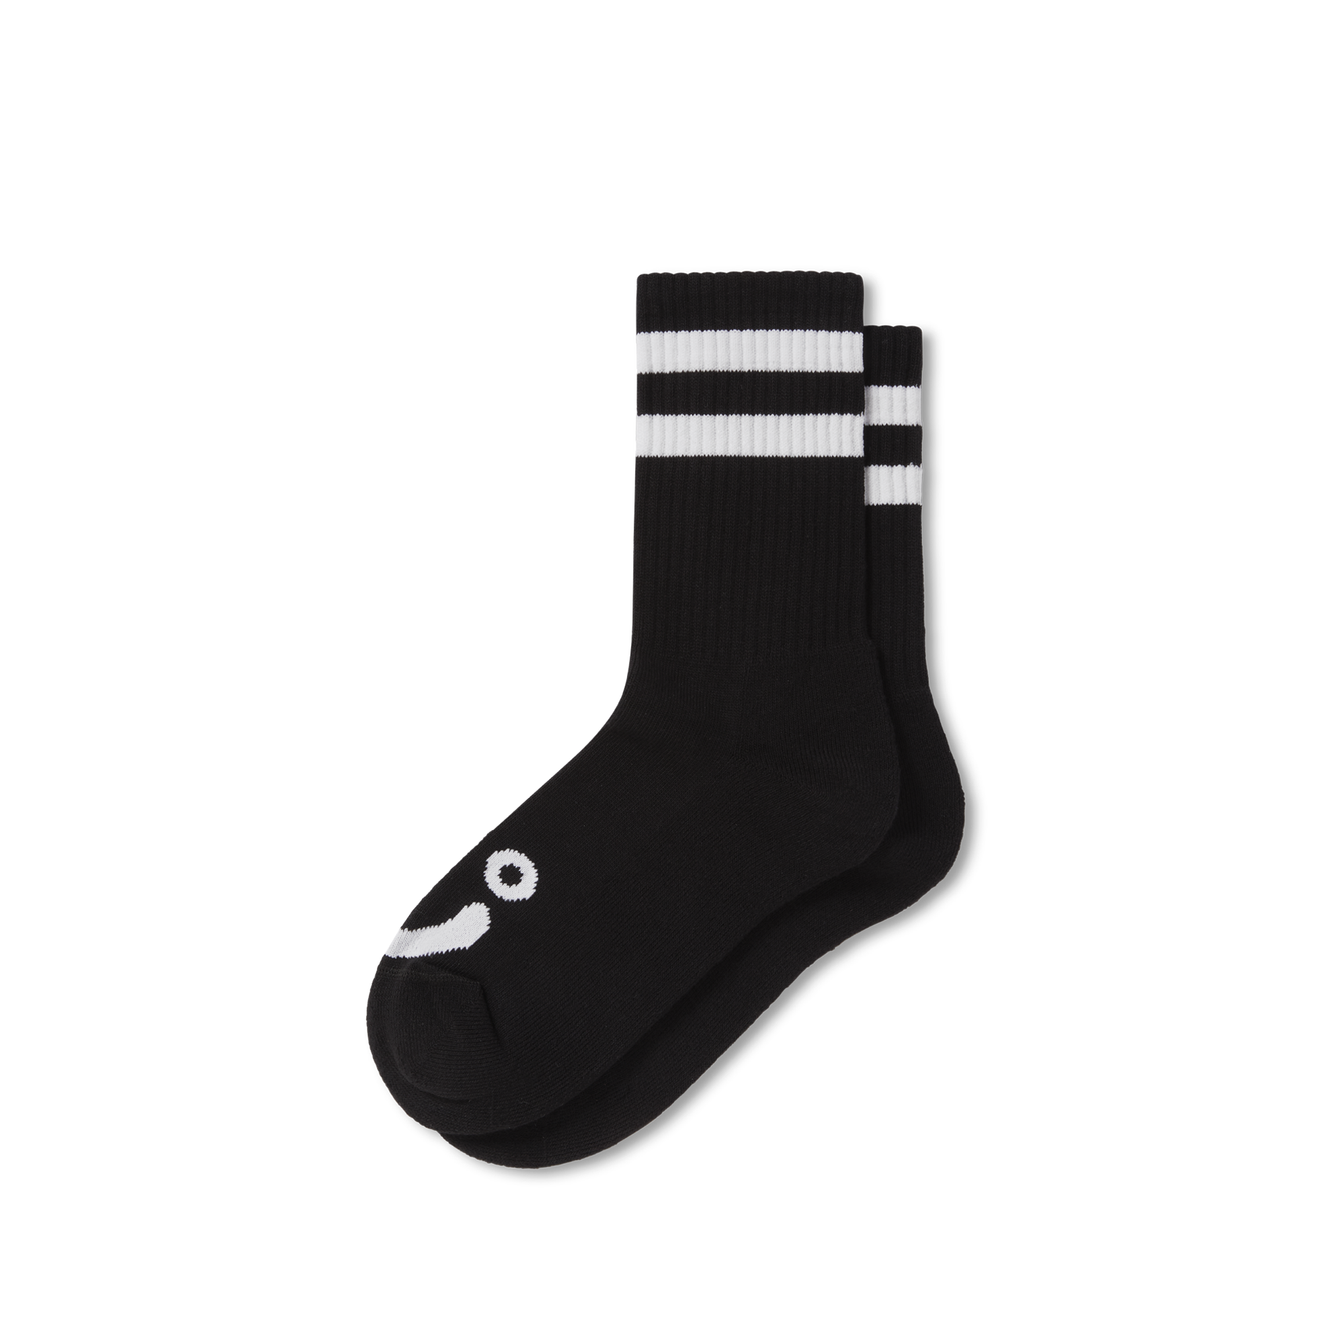 Happy Sad Socks - Black / White